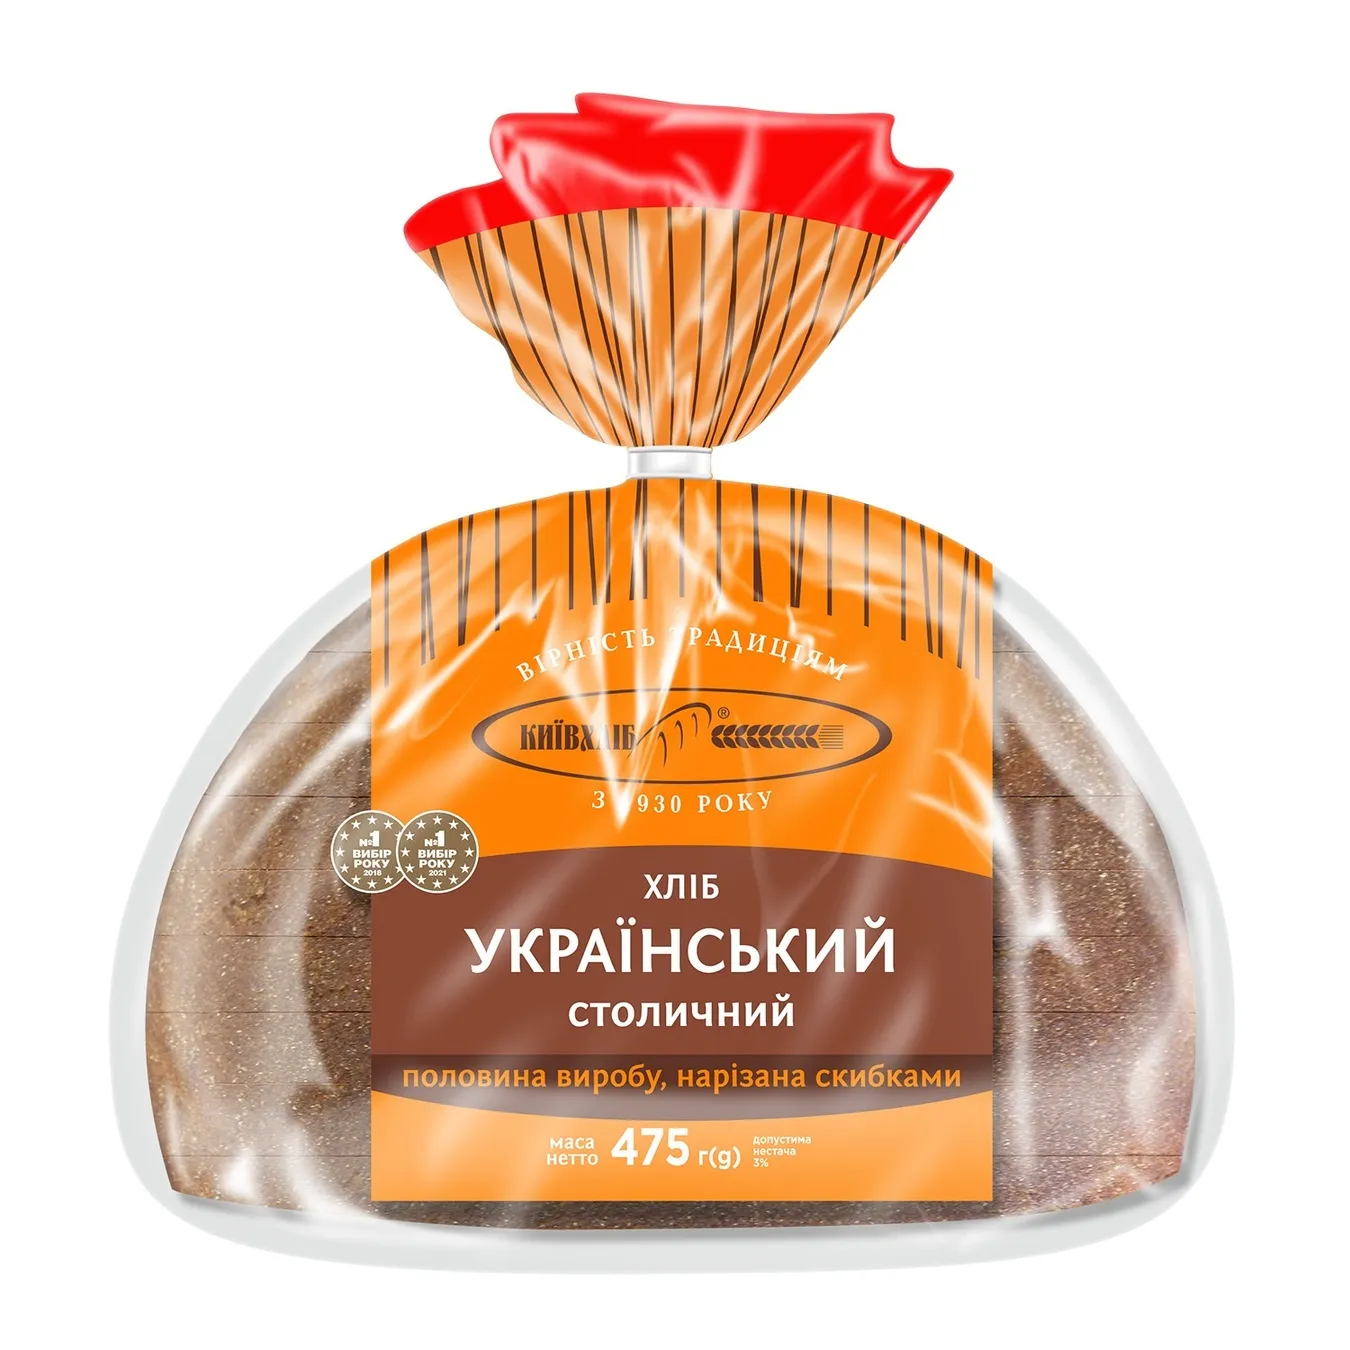 Хліб Український столичний подовий Київхліб розрізаний 475г